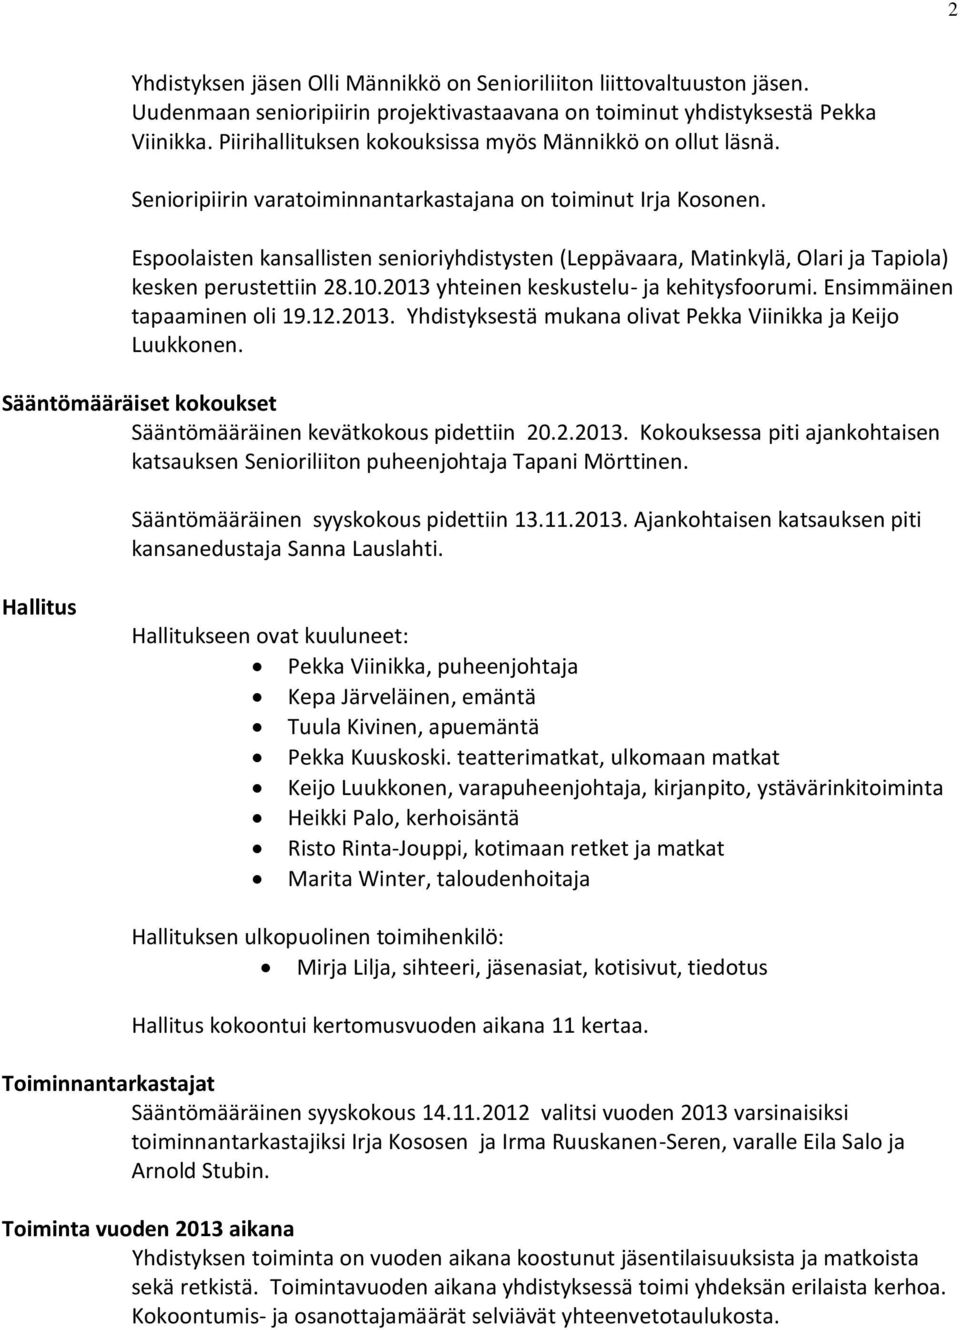 Espoolaisten kansallisten senioriyhdistysten (Leppävaara, Matinkylä, Olari ja Tapiola) kesken perustettiin 28.10.2013 yhteinen keskustelu- ja kehitysfoorumi. Ensimmäinen tapaaminen oli 19.12.2013. Yhdistyksestä mukana olivat Pekka Viinikka ja Keijo Luukkonen.